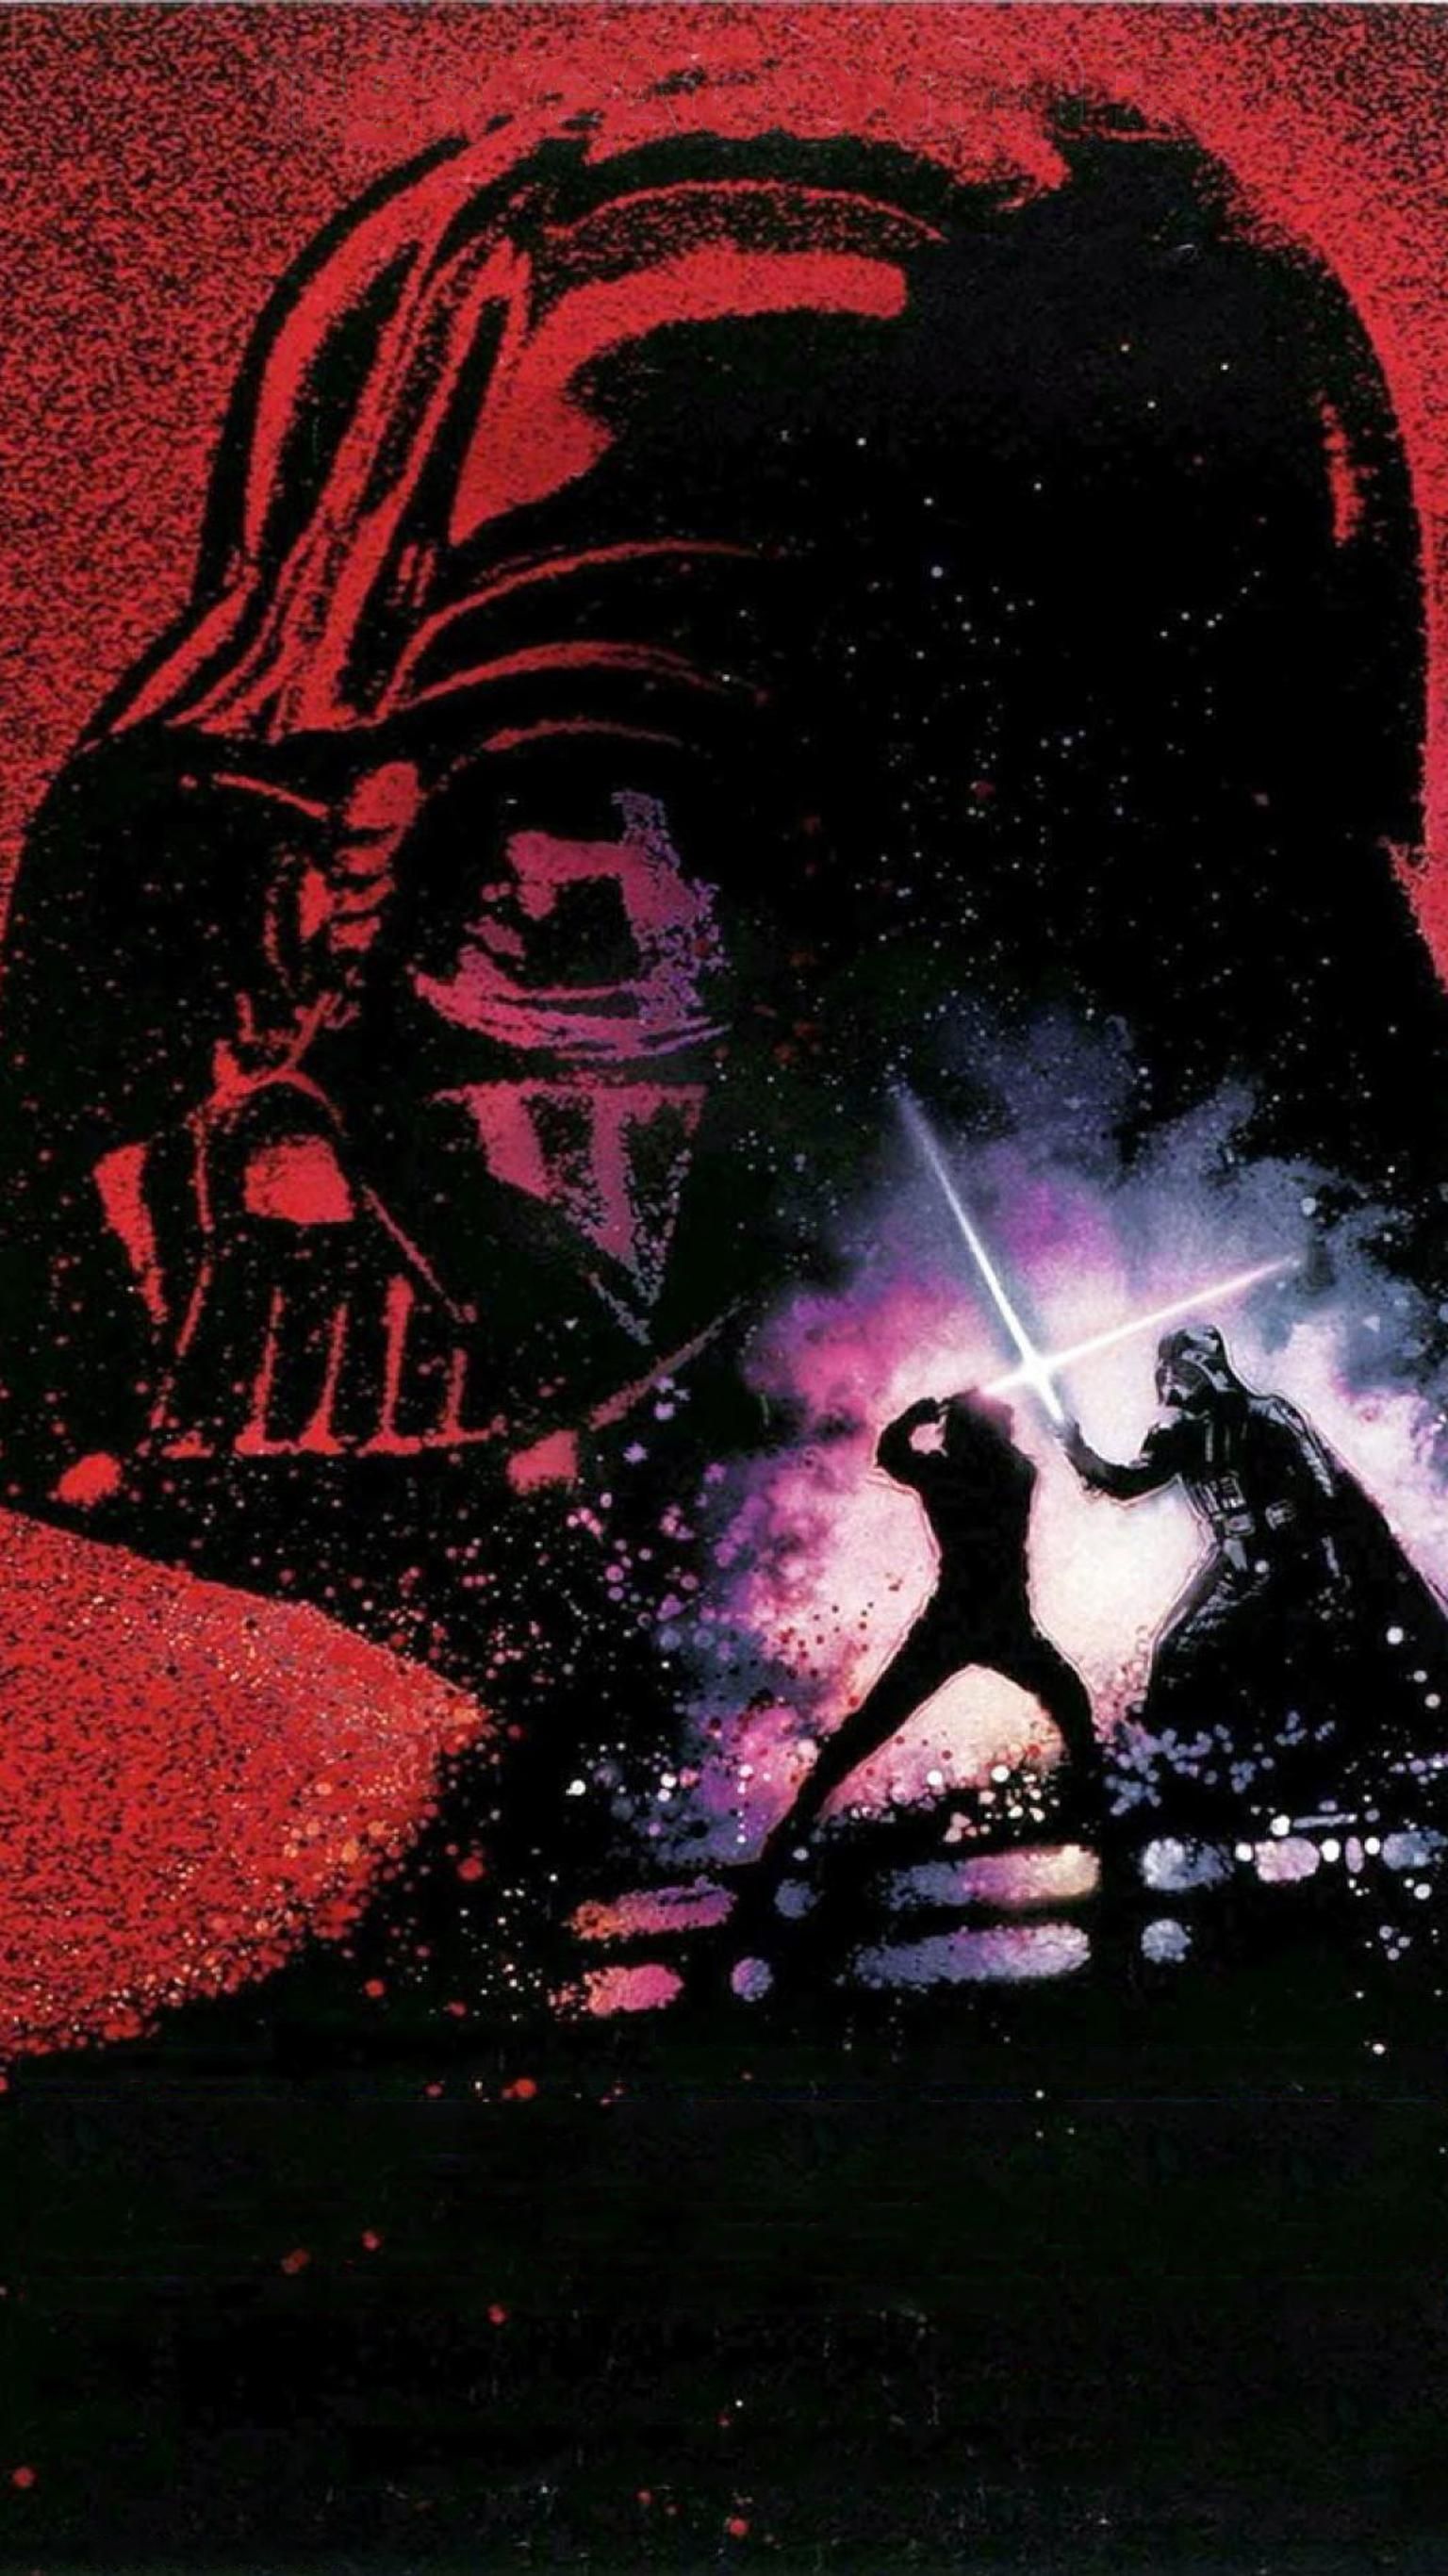 Luke Star Wars Wallpaper